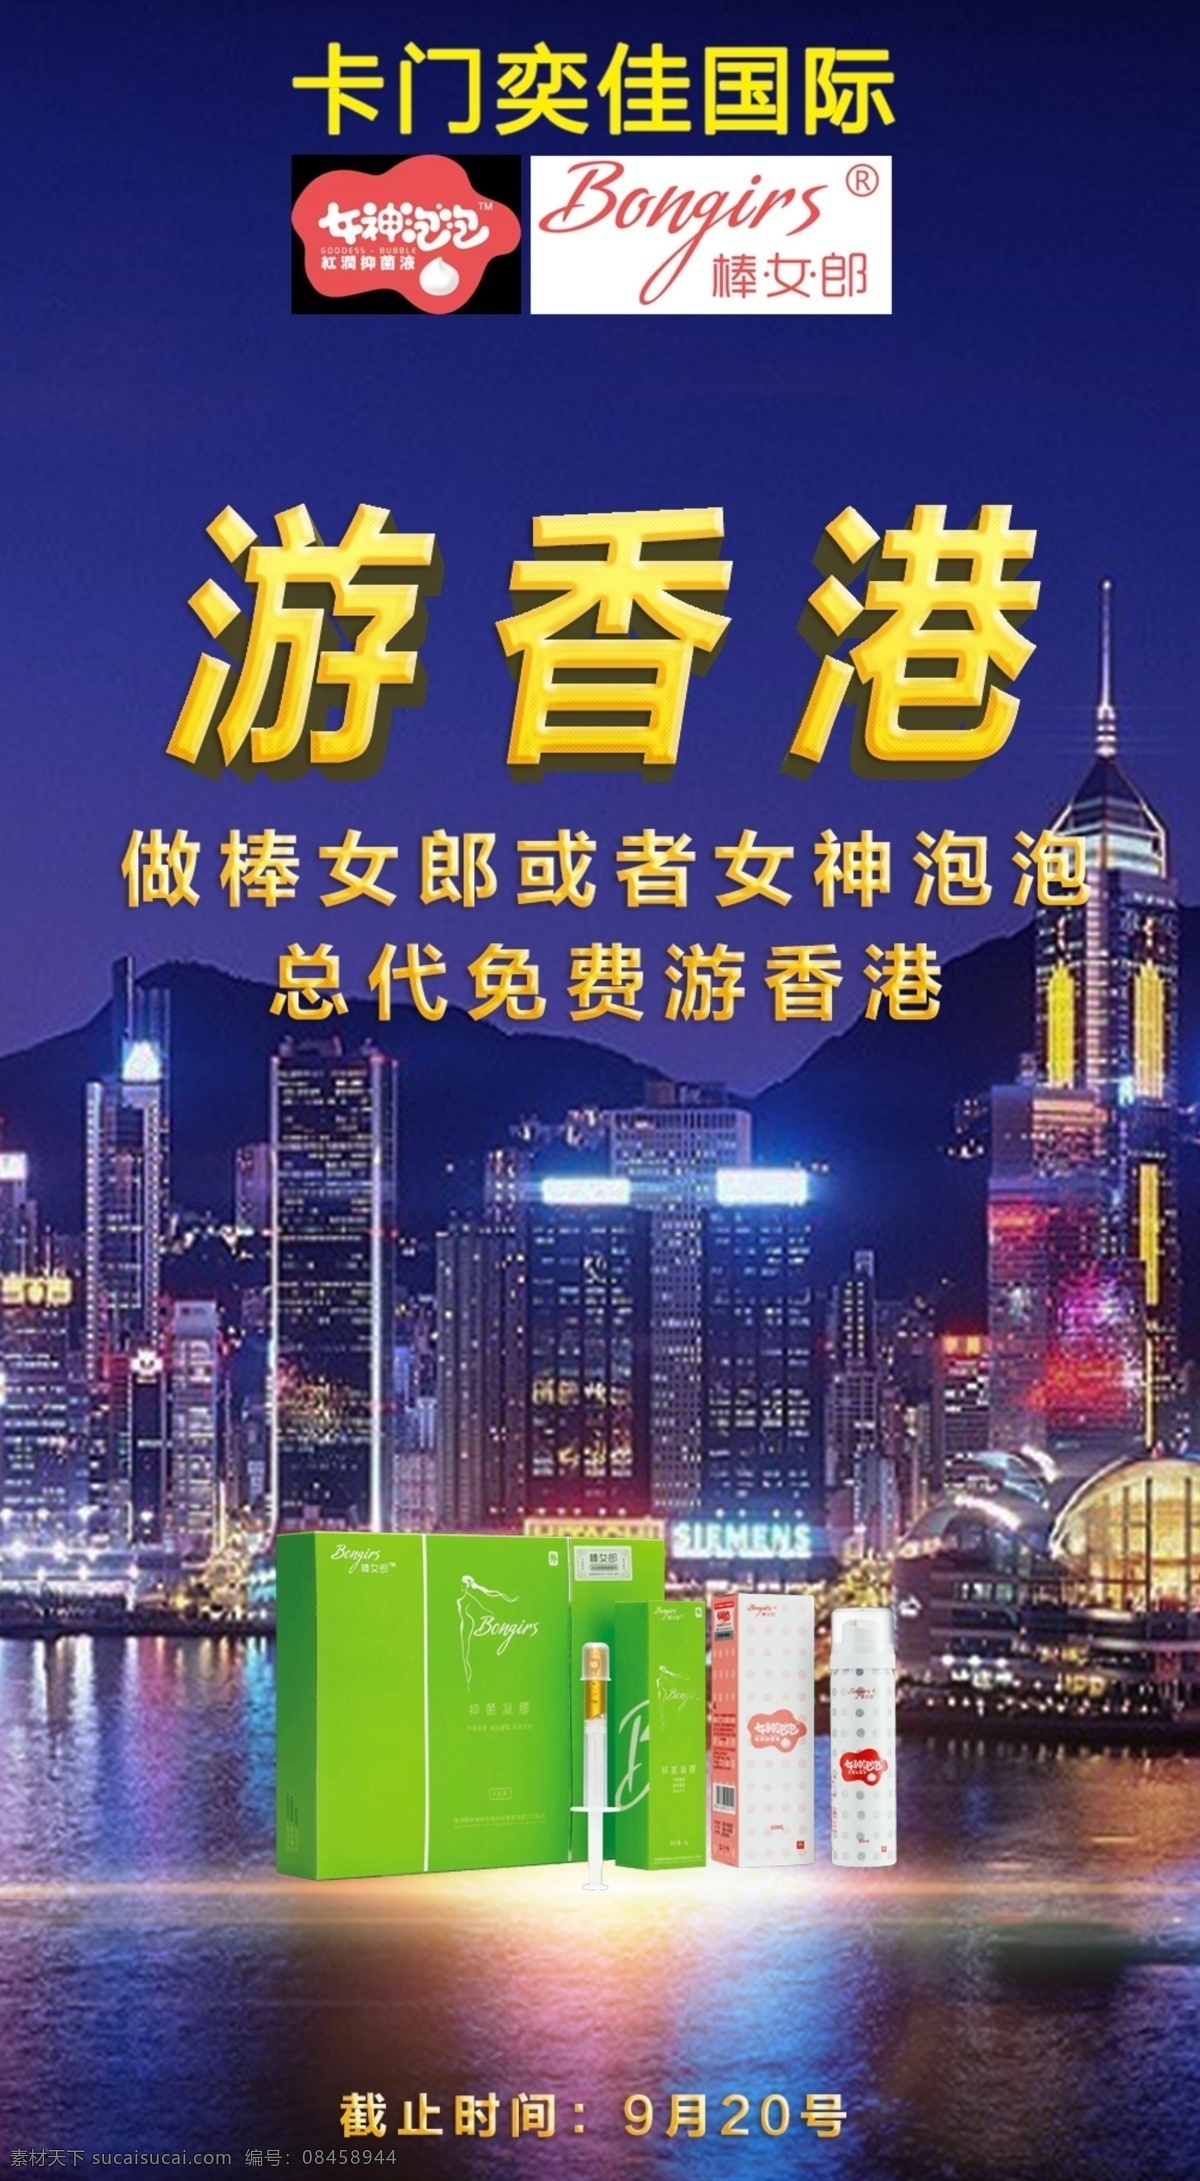 做 总代 免费 游 香港 微 商 香港游 微商 微商海报 海报 旅游香港 旅游 代理